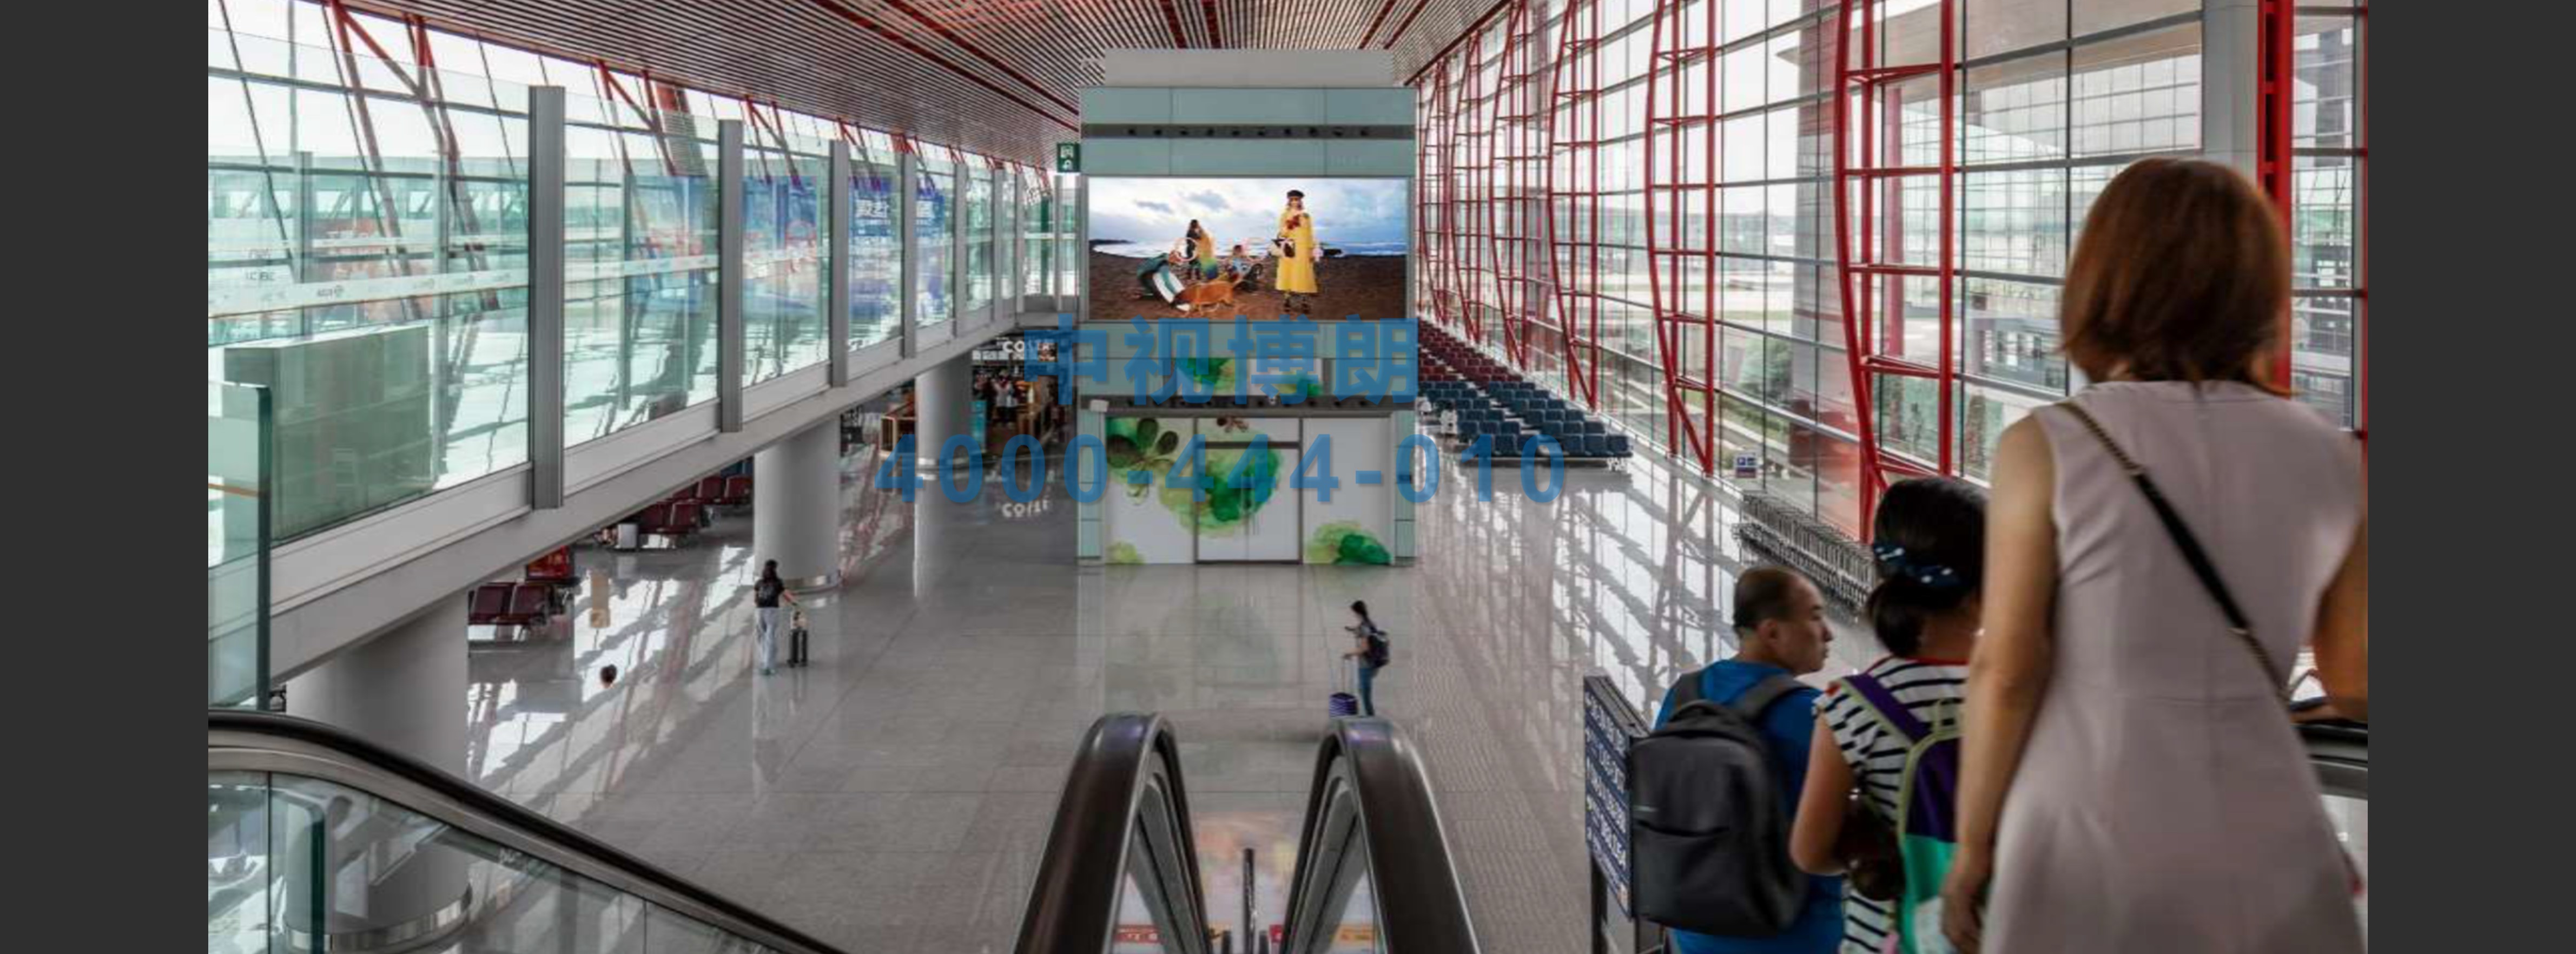 北京首都机场广告-T3 Waiting Area Escalator Entrance Facing Light Box